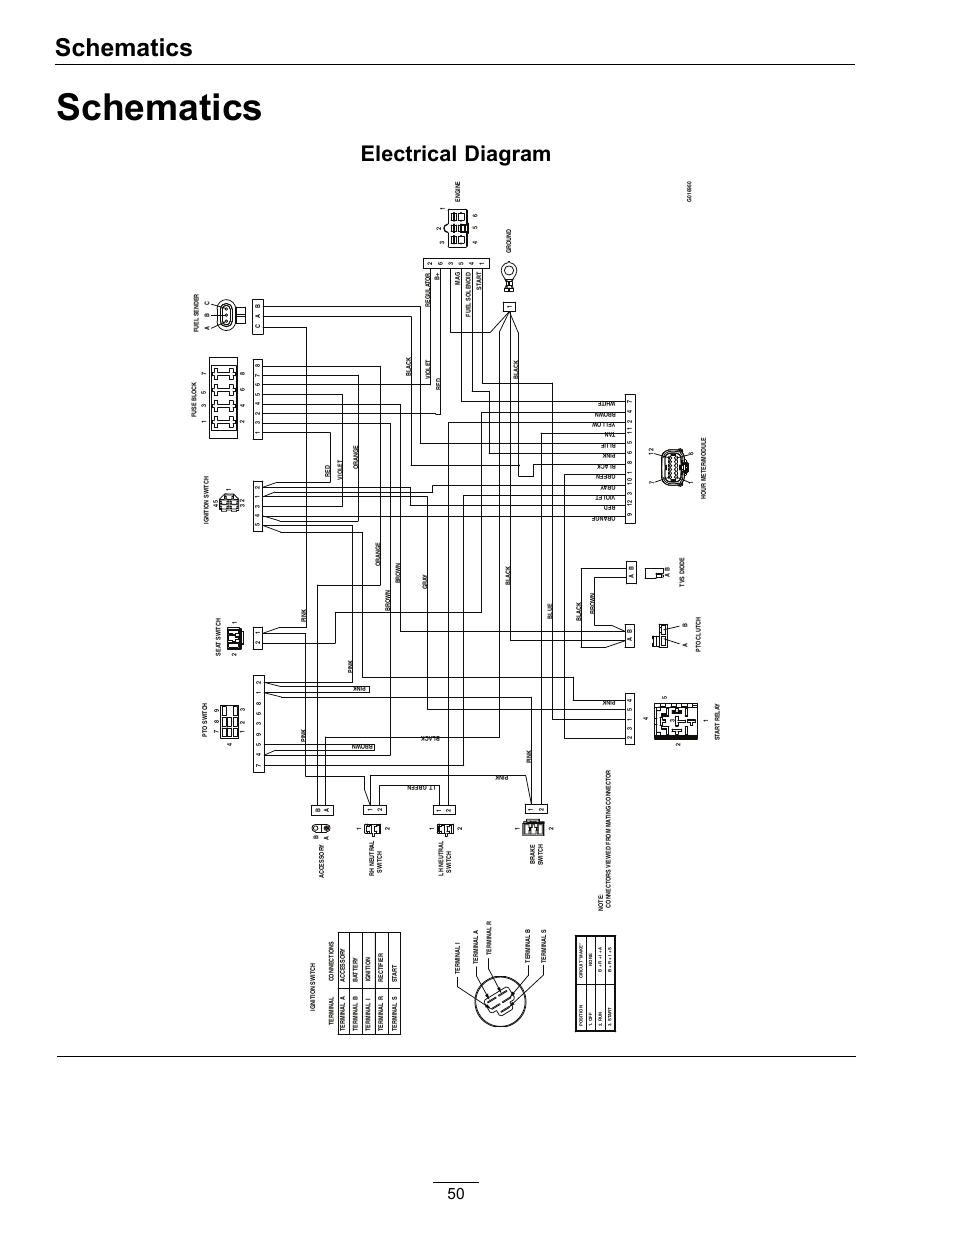 powerline alternator wiring diagram